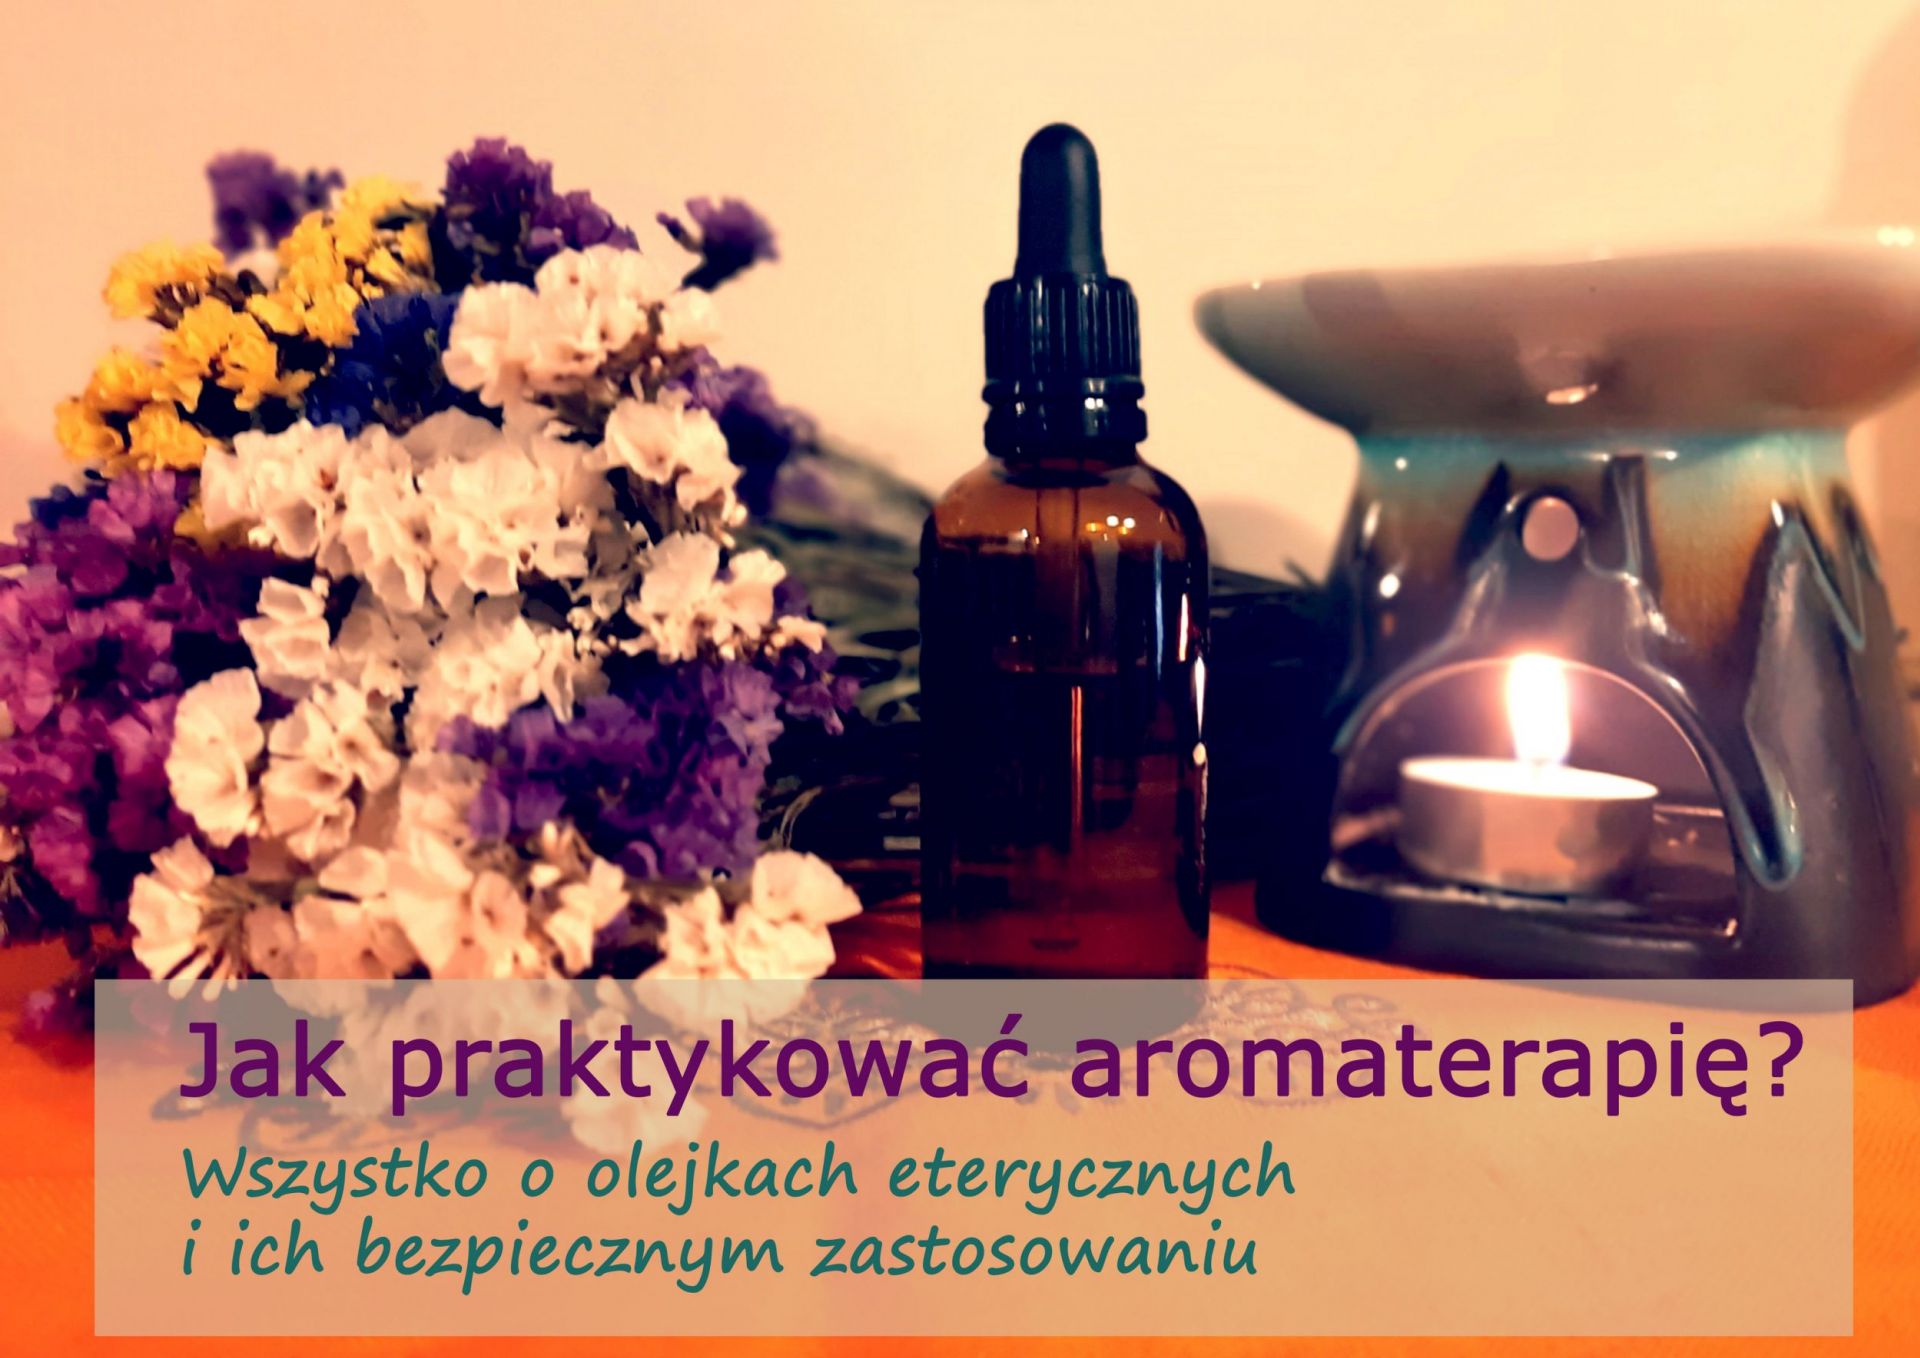 Jak praktykować aromaterapię? - aromaterapia.jpg